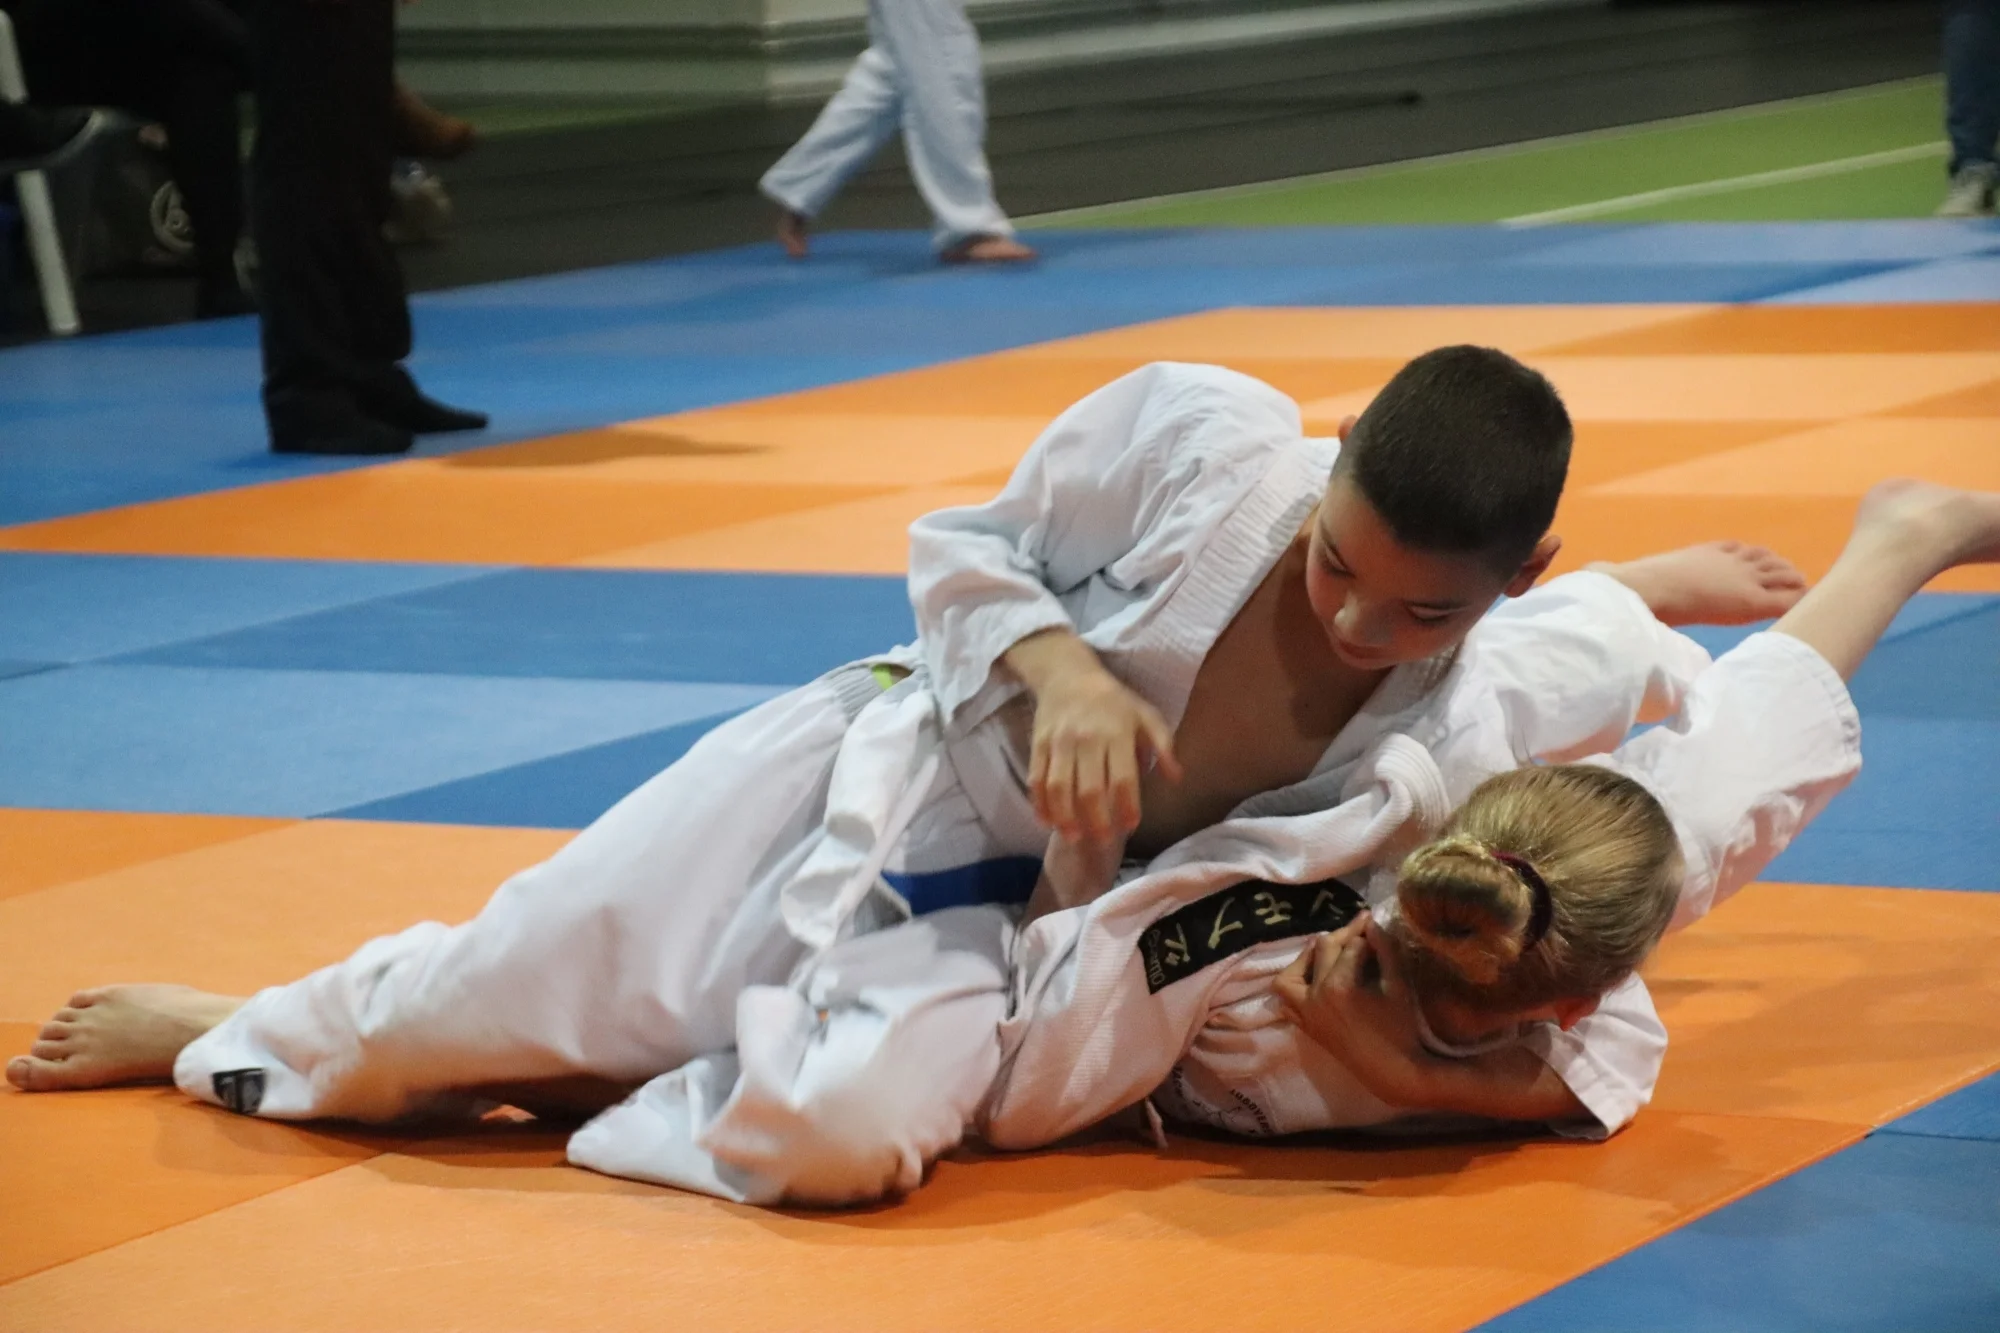 Maa judotoernooi